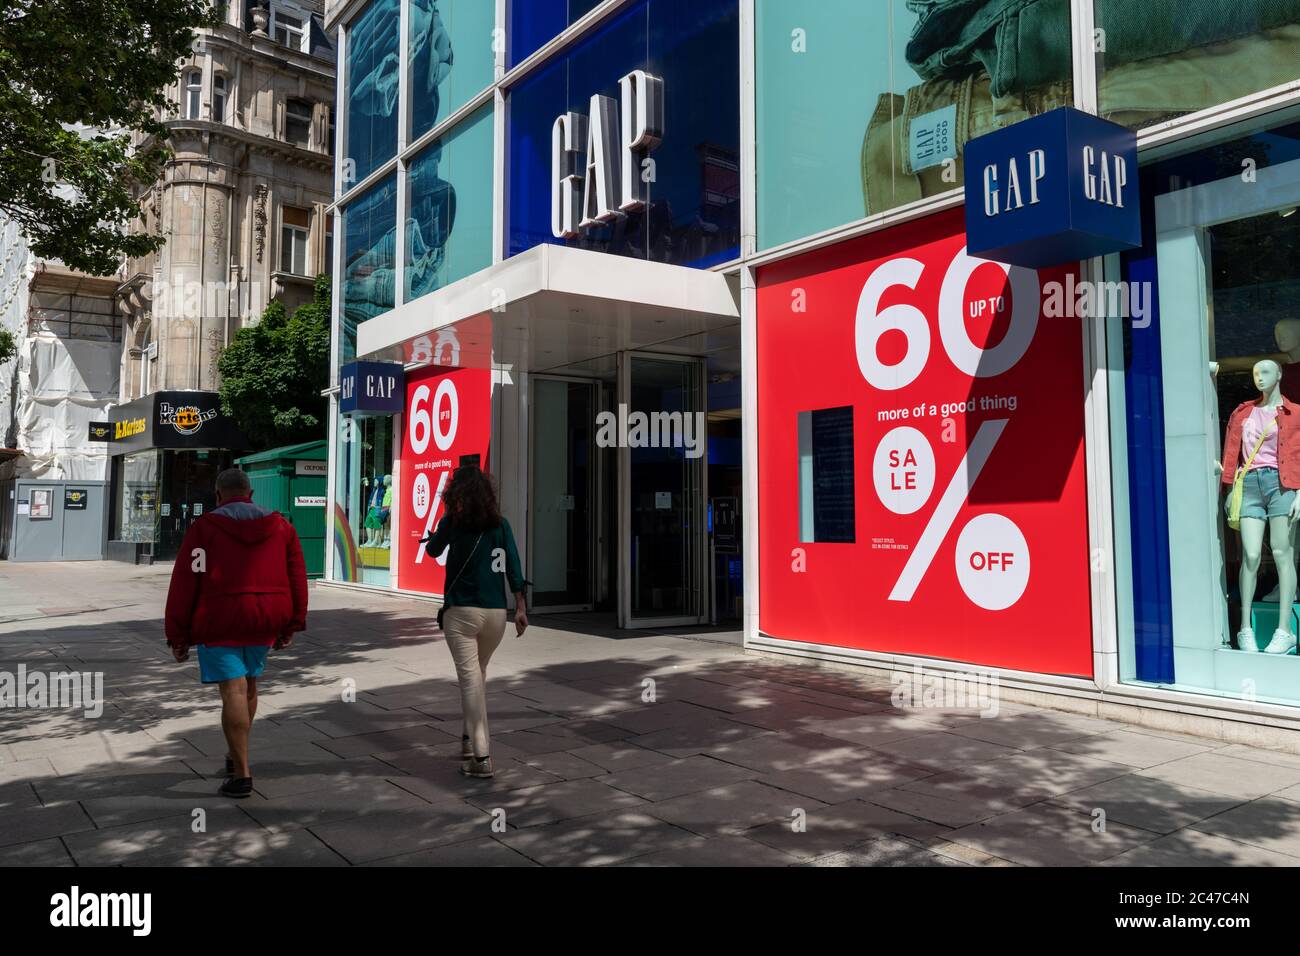 Il negozio della società di abbigliamento Gap a Londra Oxford Street con grandi cartelli di riduzione dei prezzi di vendita vicino all'ingresso. Foto Stock